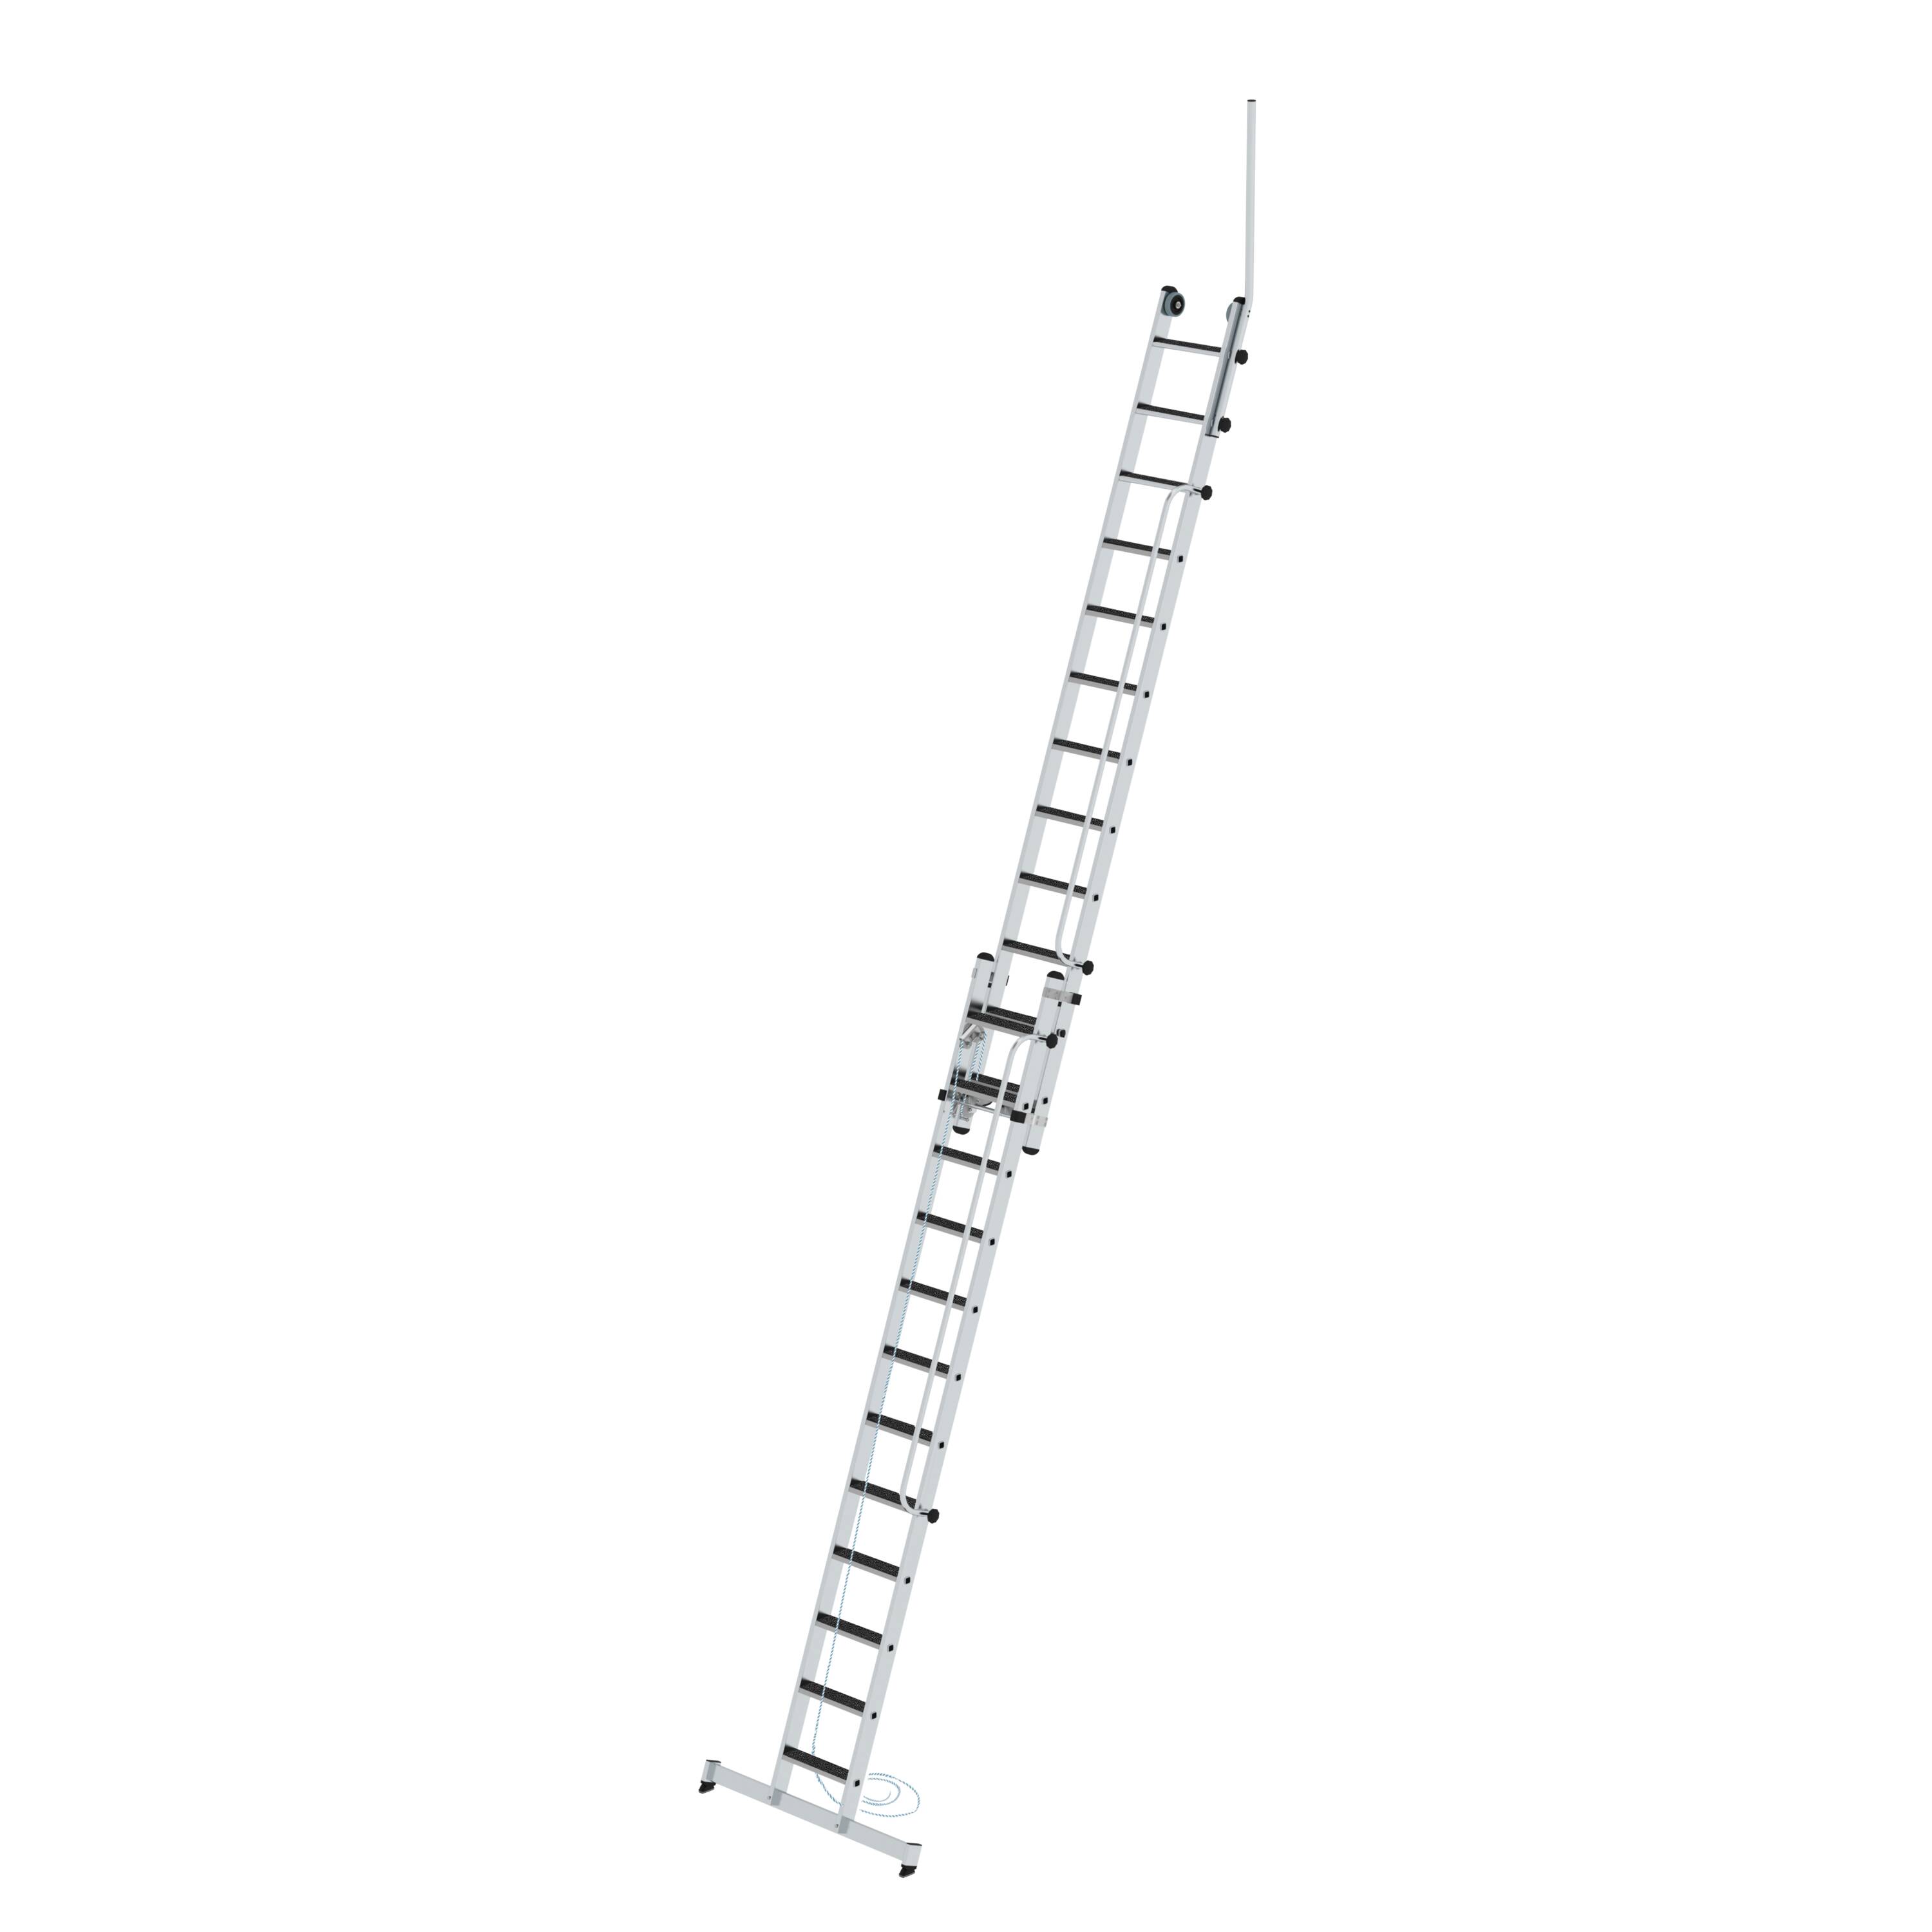 MUNK Stufen-Seilzugleiter 2-teilig mit Handlauf und Ausstiegsholm  